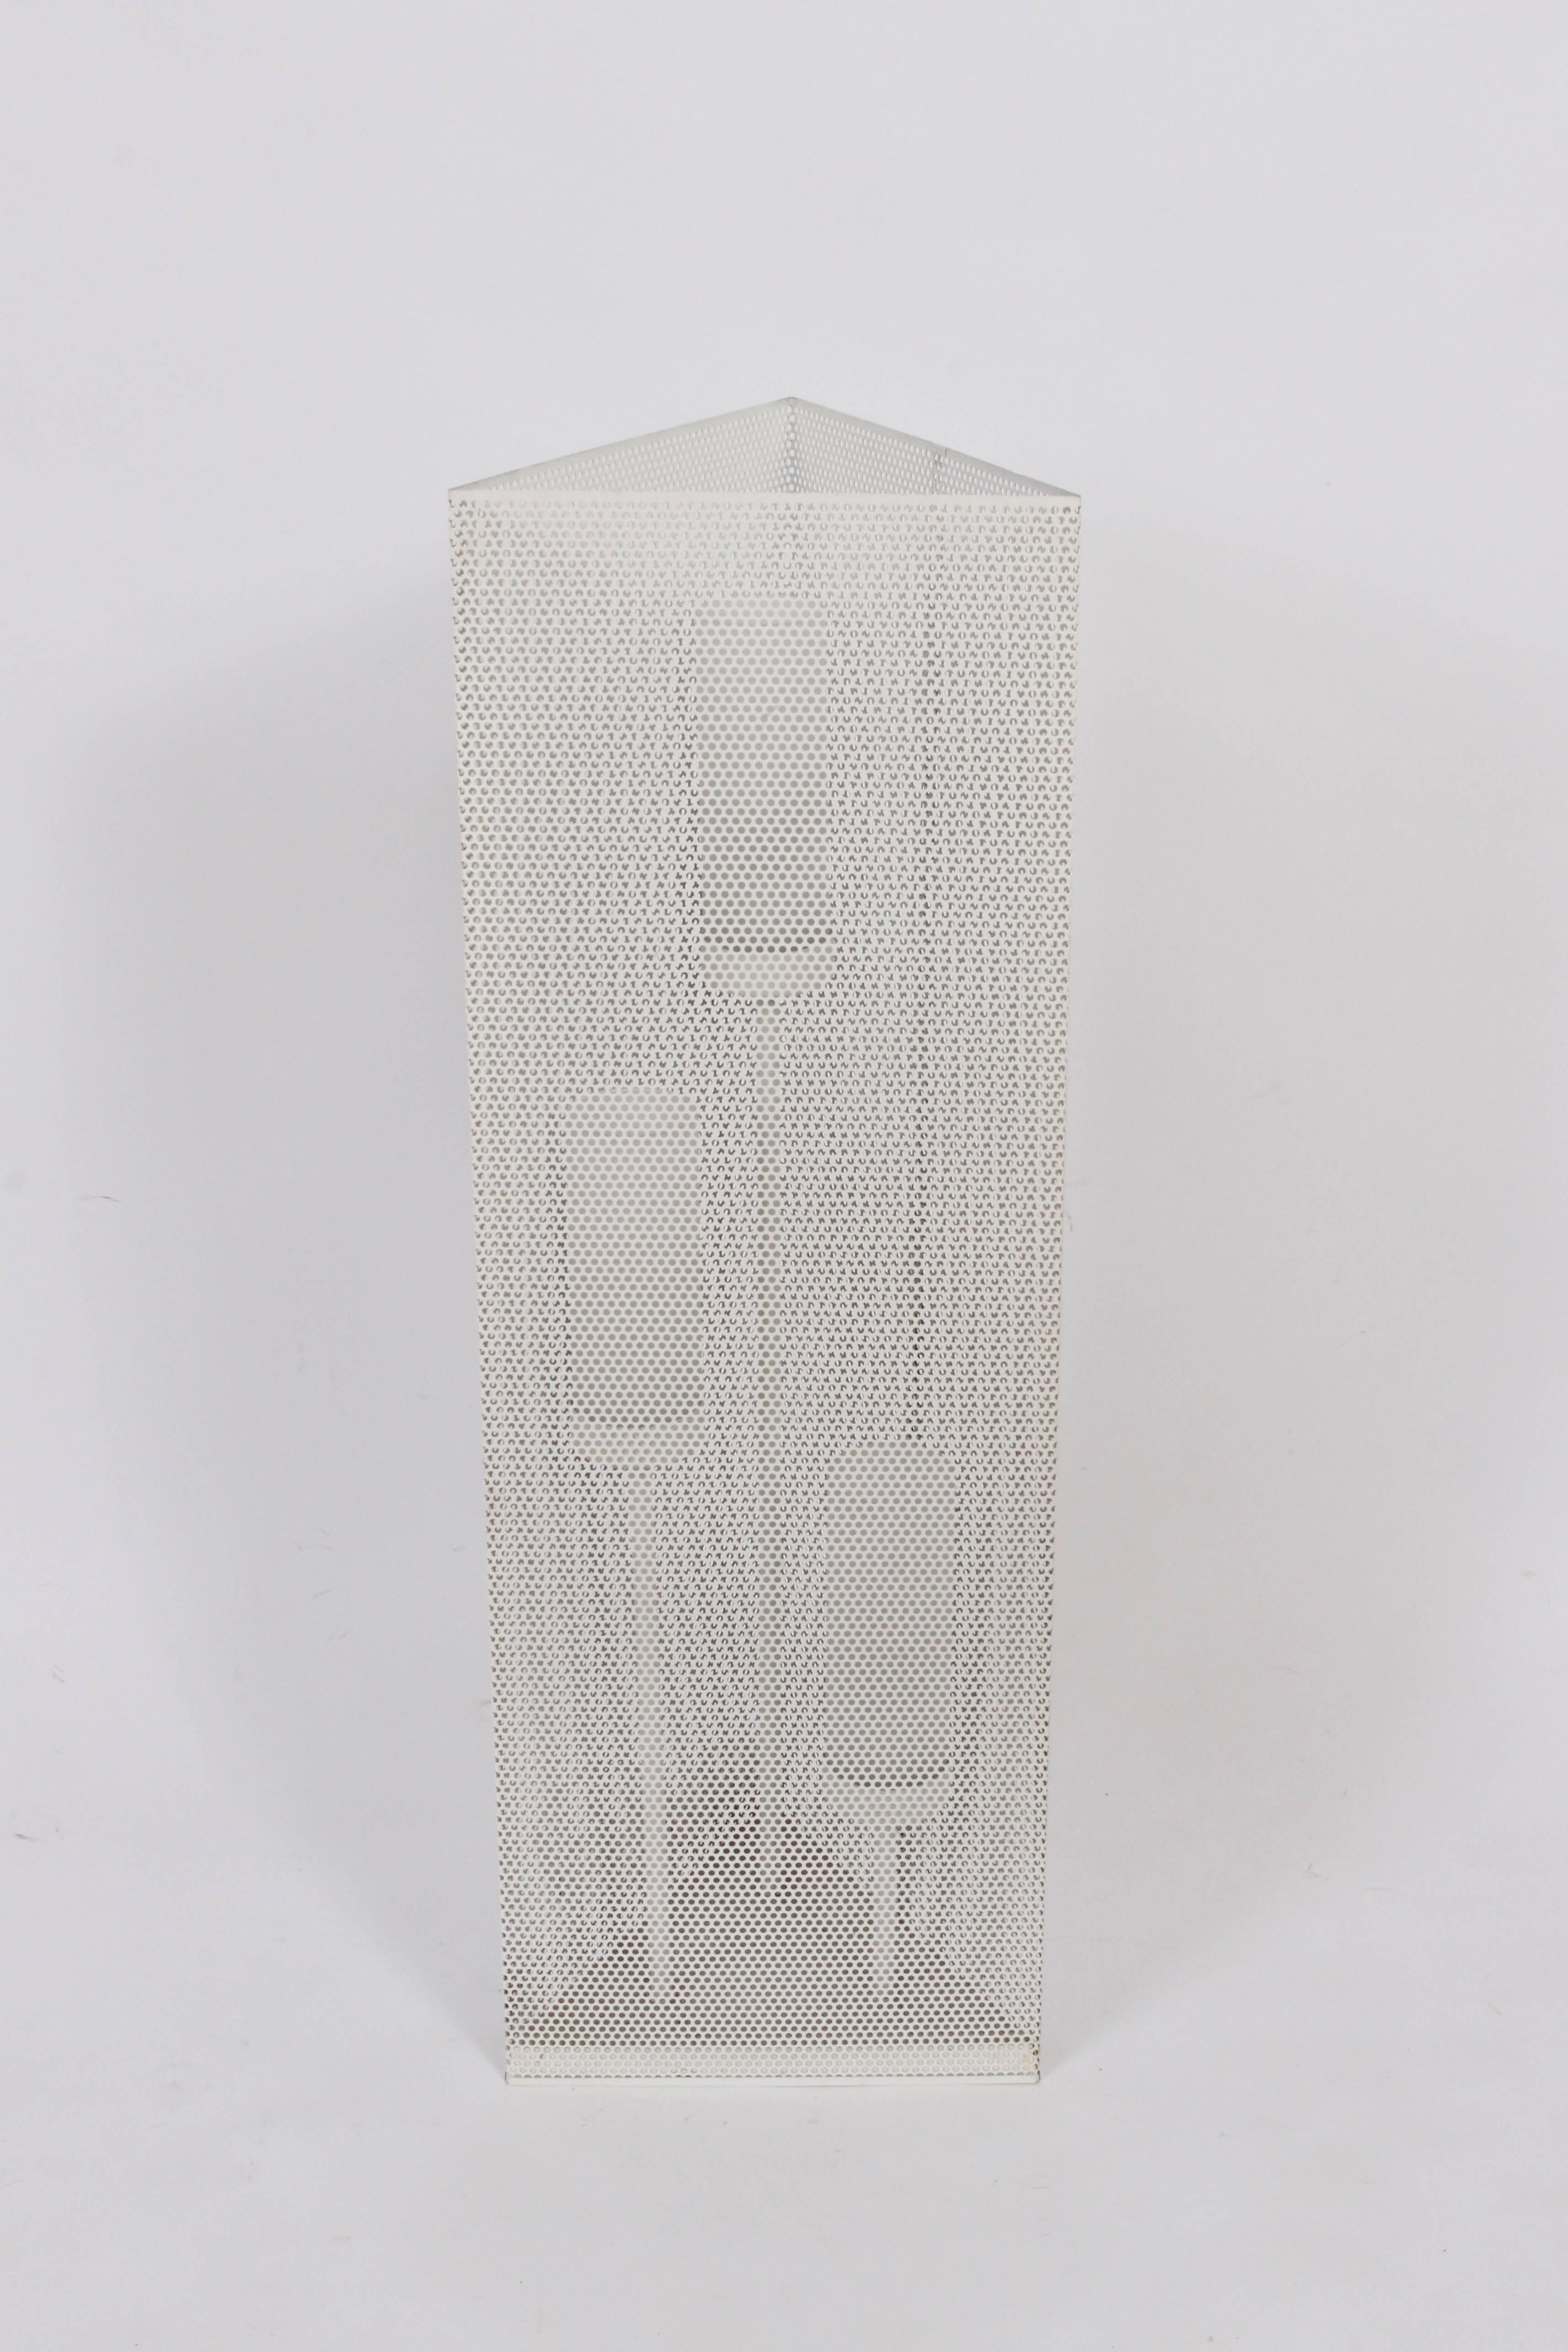 Minimalistische, geometrische, perforierte Steh- oder Tischleuchte aus weißem Email, 1960er Jahre. Eine vielseitige und architektonische dreieckige Form aus weiß emailliertem Metall mit geometrischen Perforationen und drei aufsteigenden,